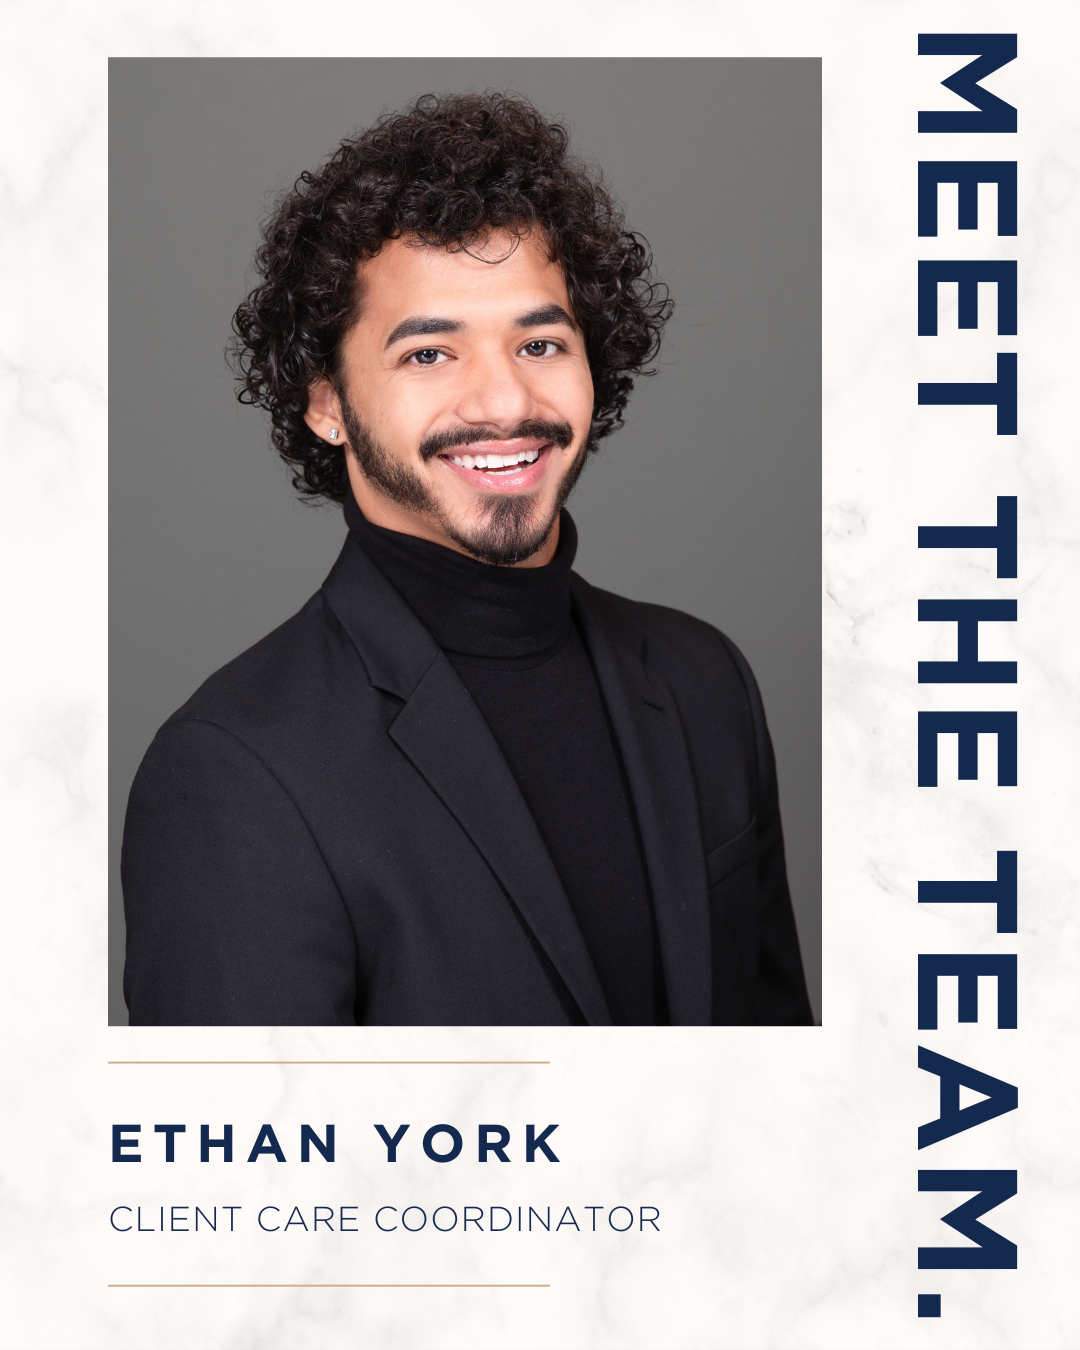 Meet the Team: Ethan York